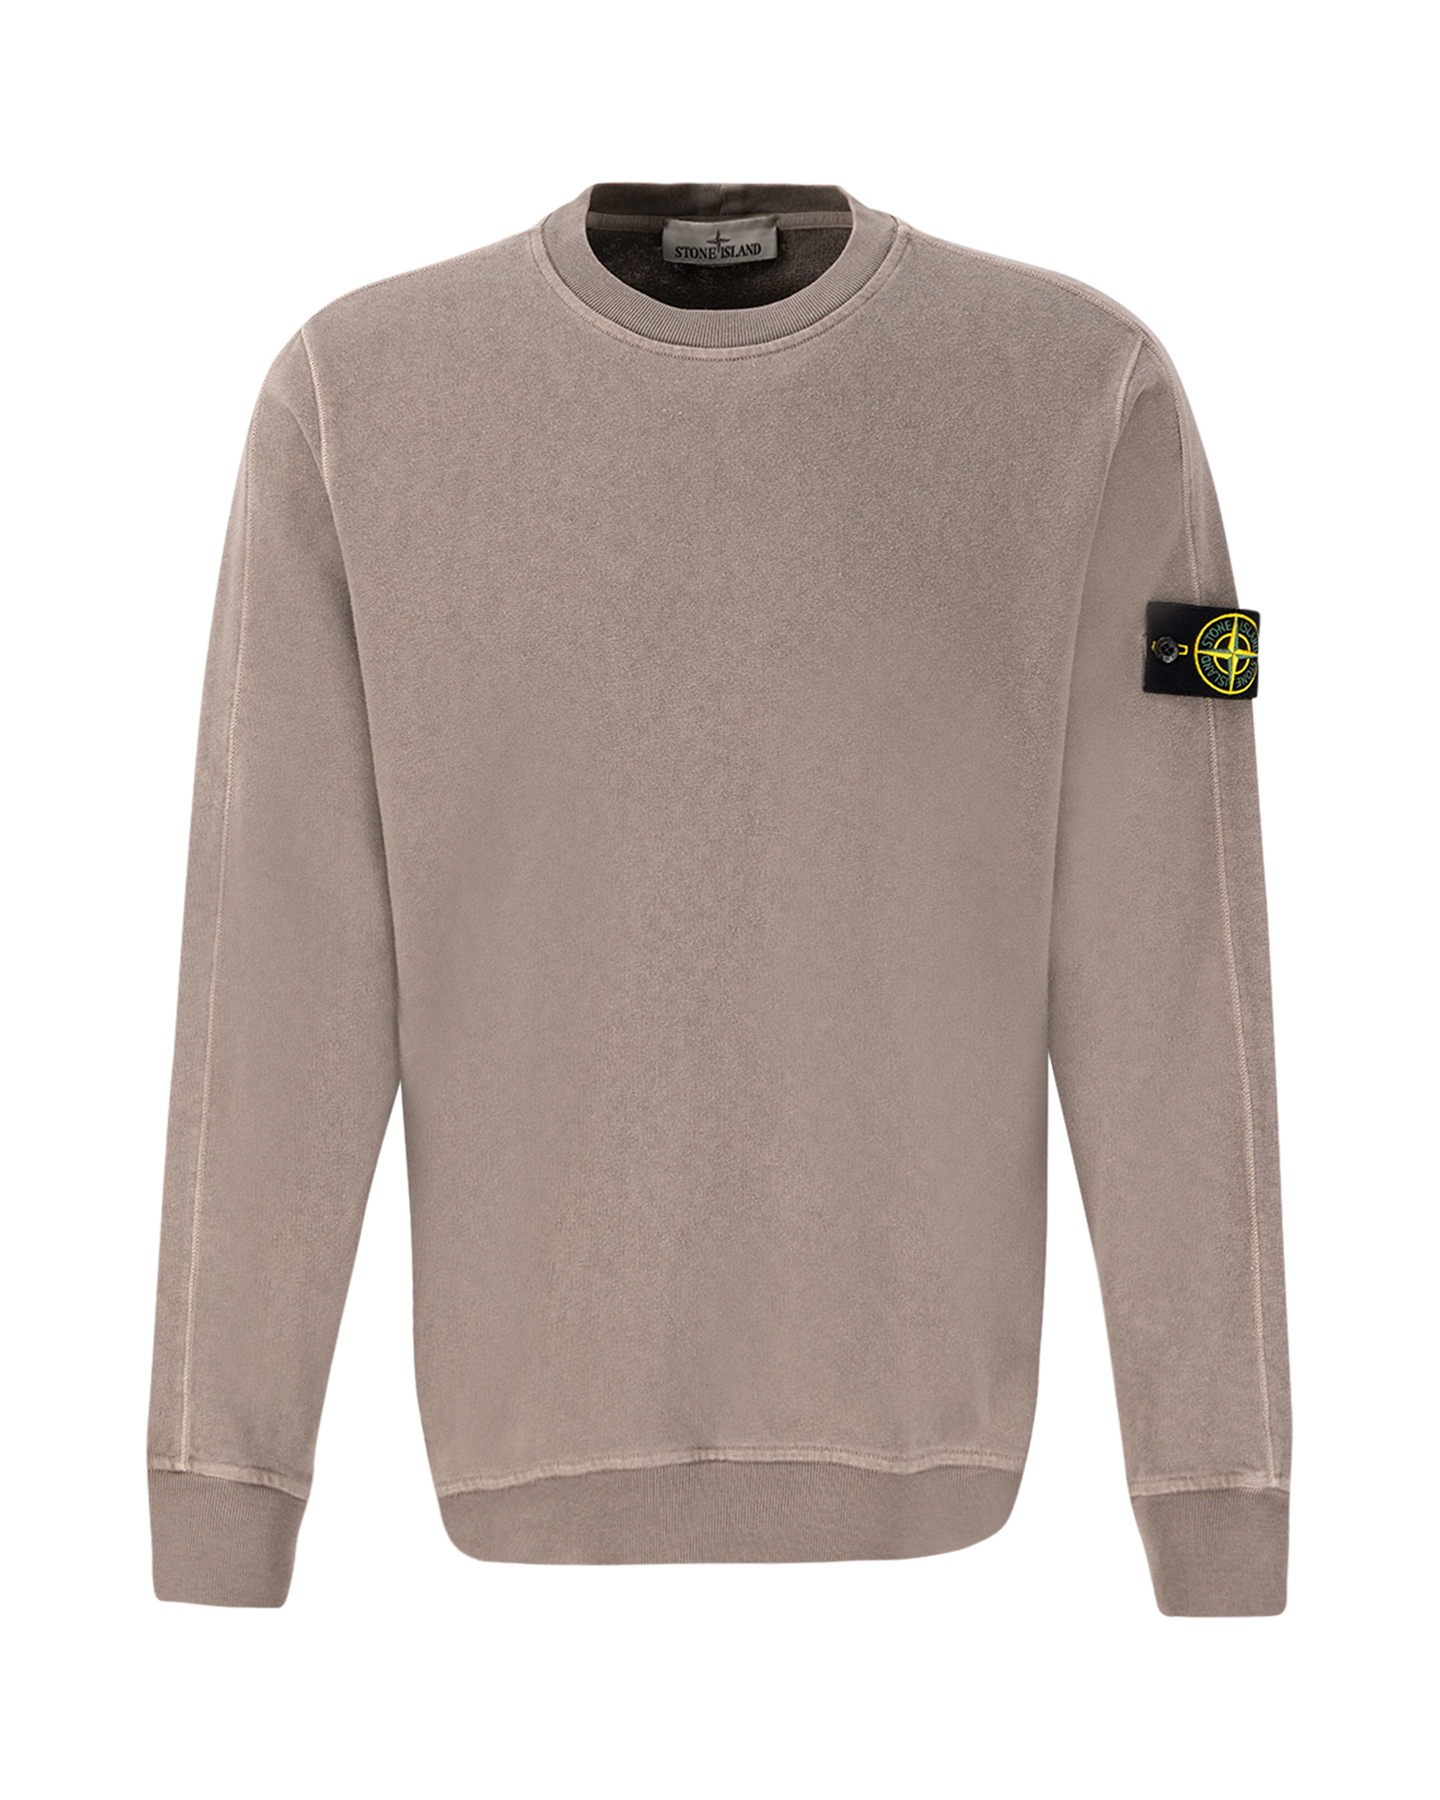 Stone Island 66060 Malfile Fleece Garment Dyed 'Old' Effect Crewneck Sweatshirt GRIJS 1